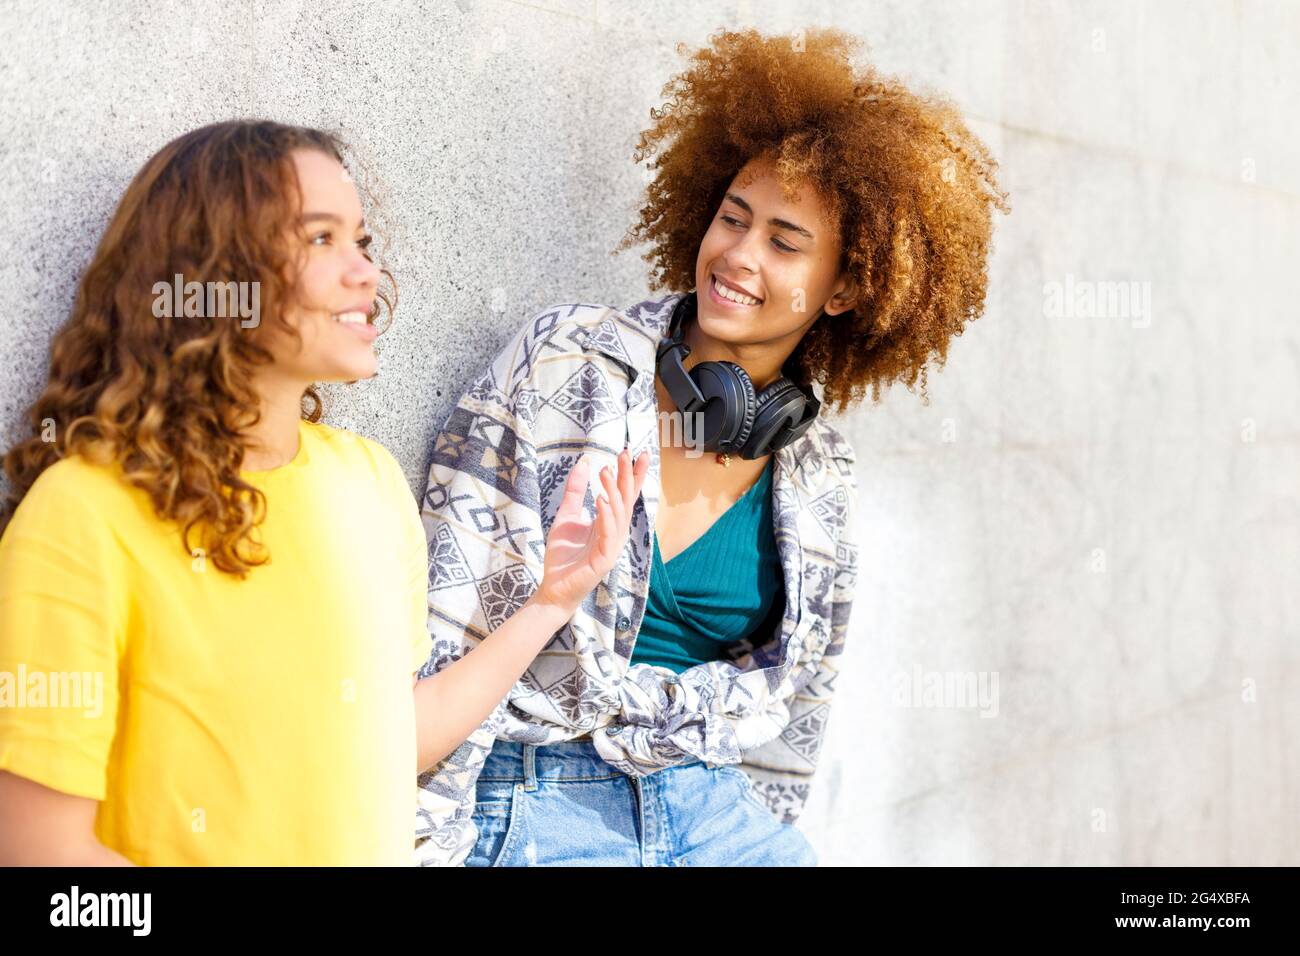 Junge Freundinnen reden, während sie vor der Wand stehen Stockfoto